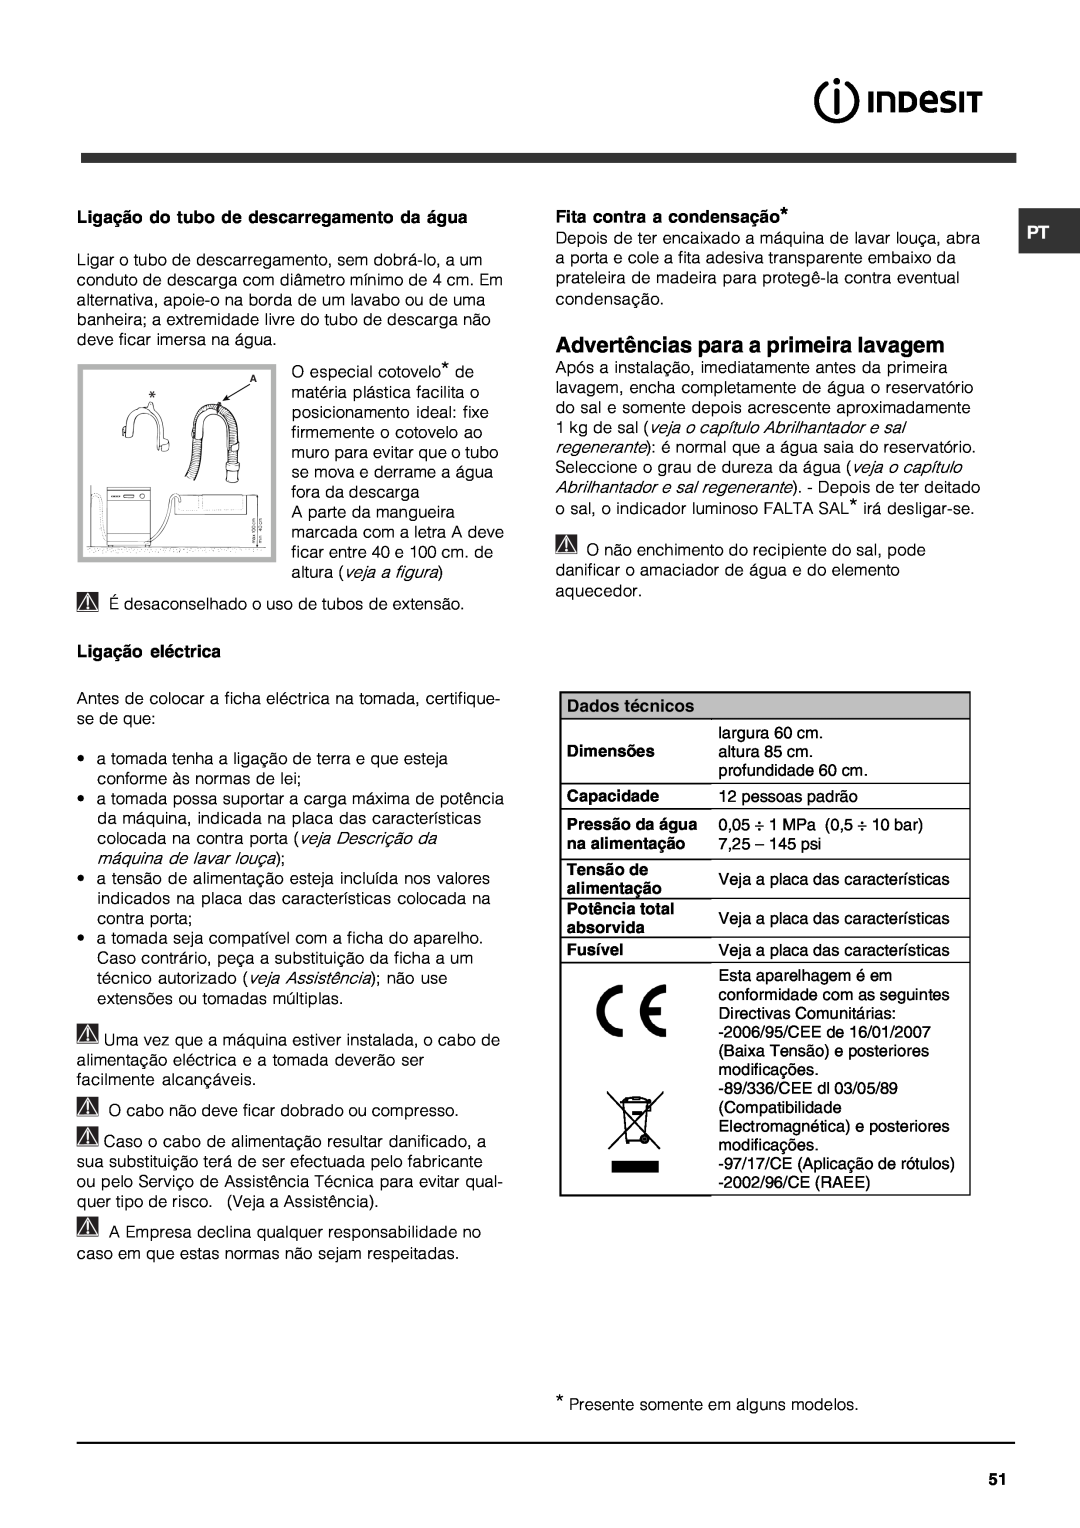 Indesit DFG 262 Advertências para a primeira lavagem, Ligação do tubo de descarregamento da água, Ligação eléctrica 